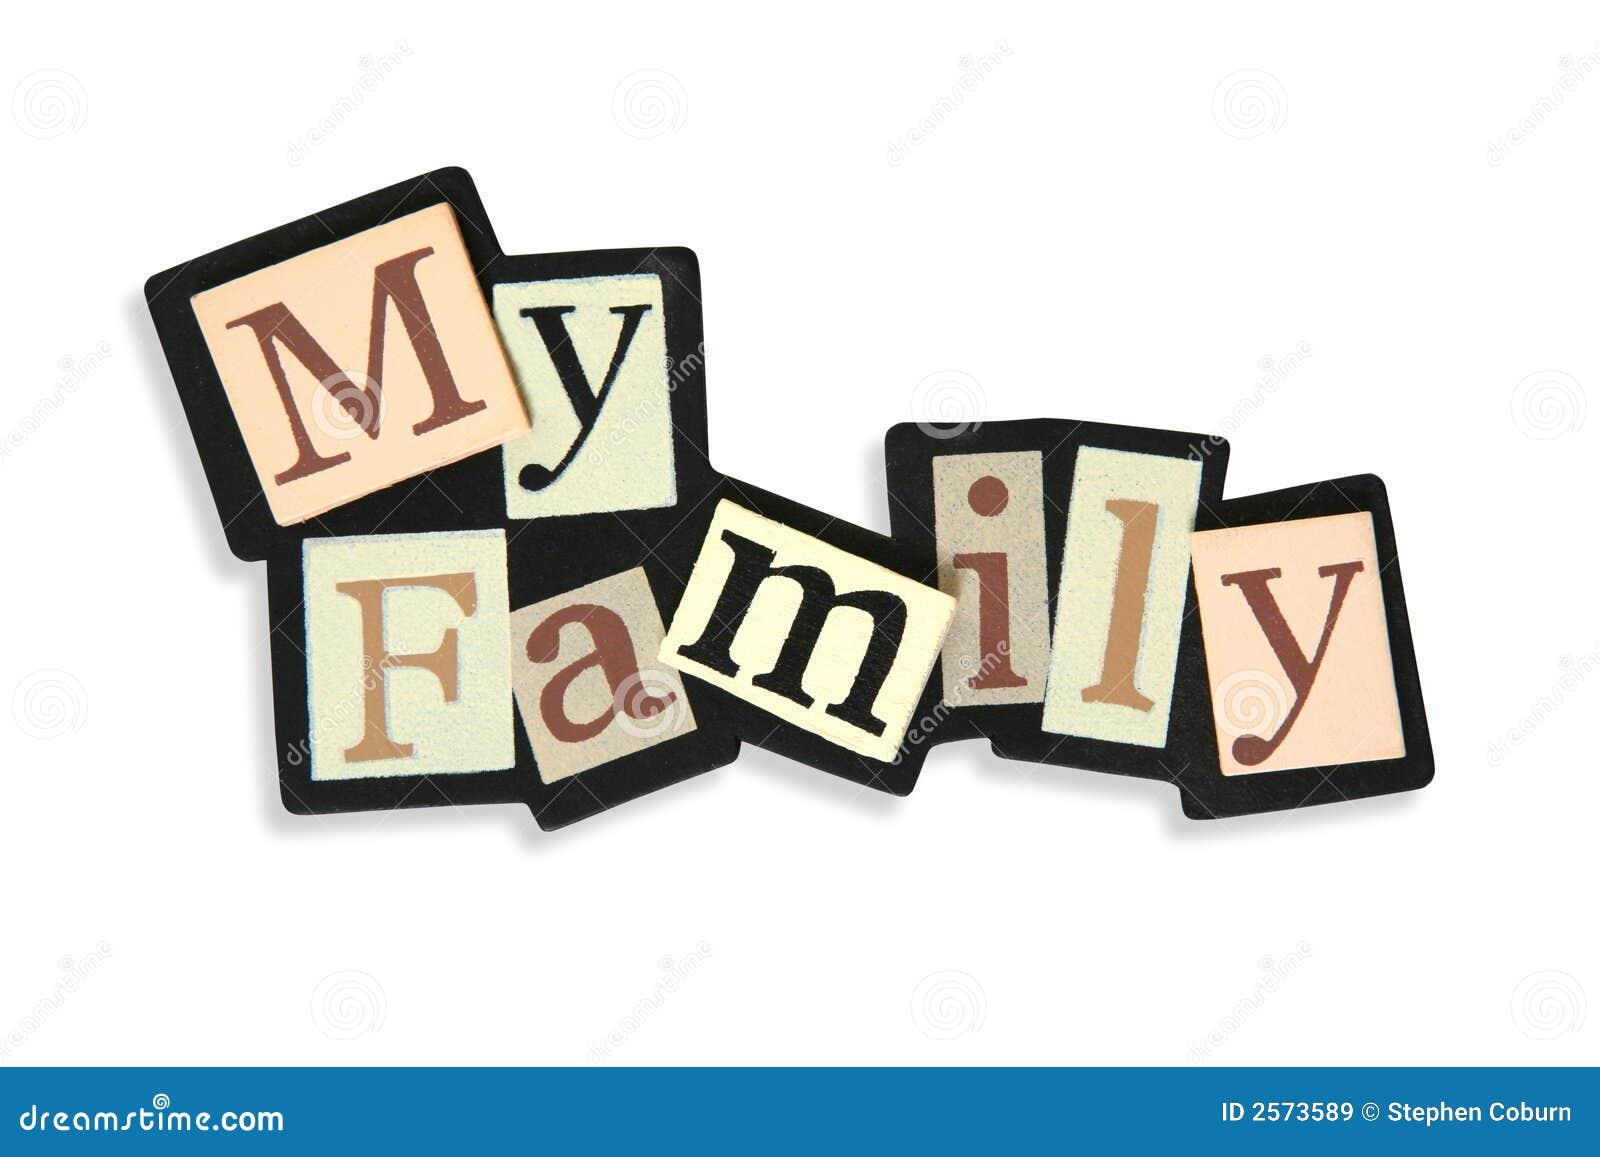 clipart my family - photo #28